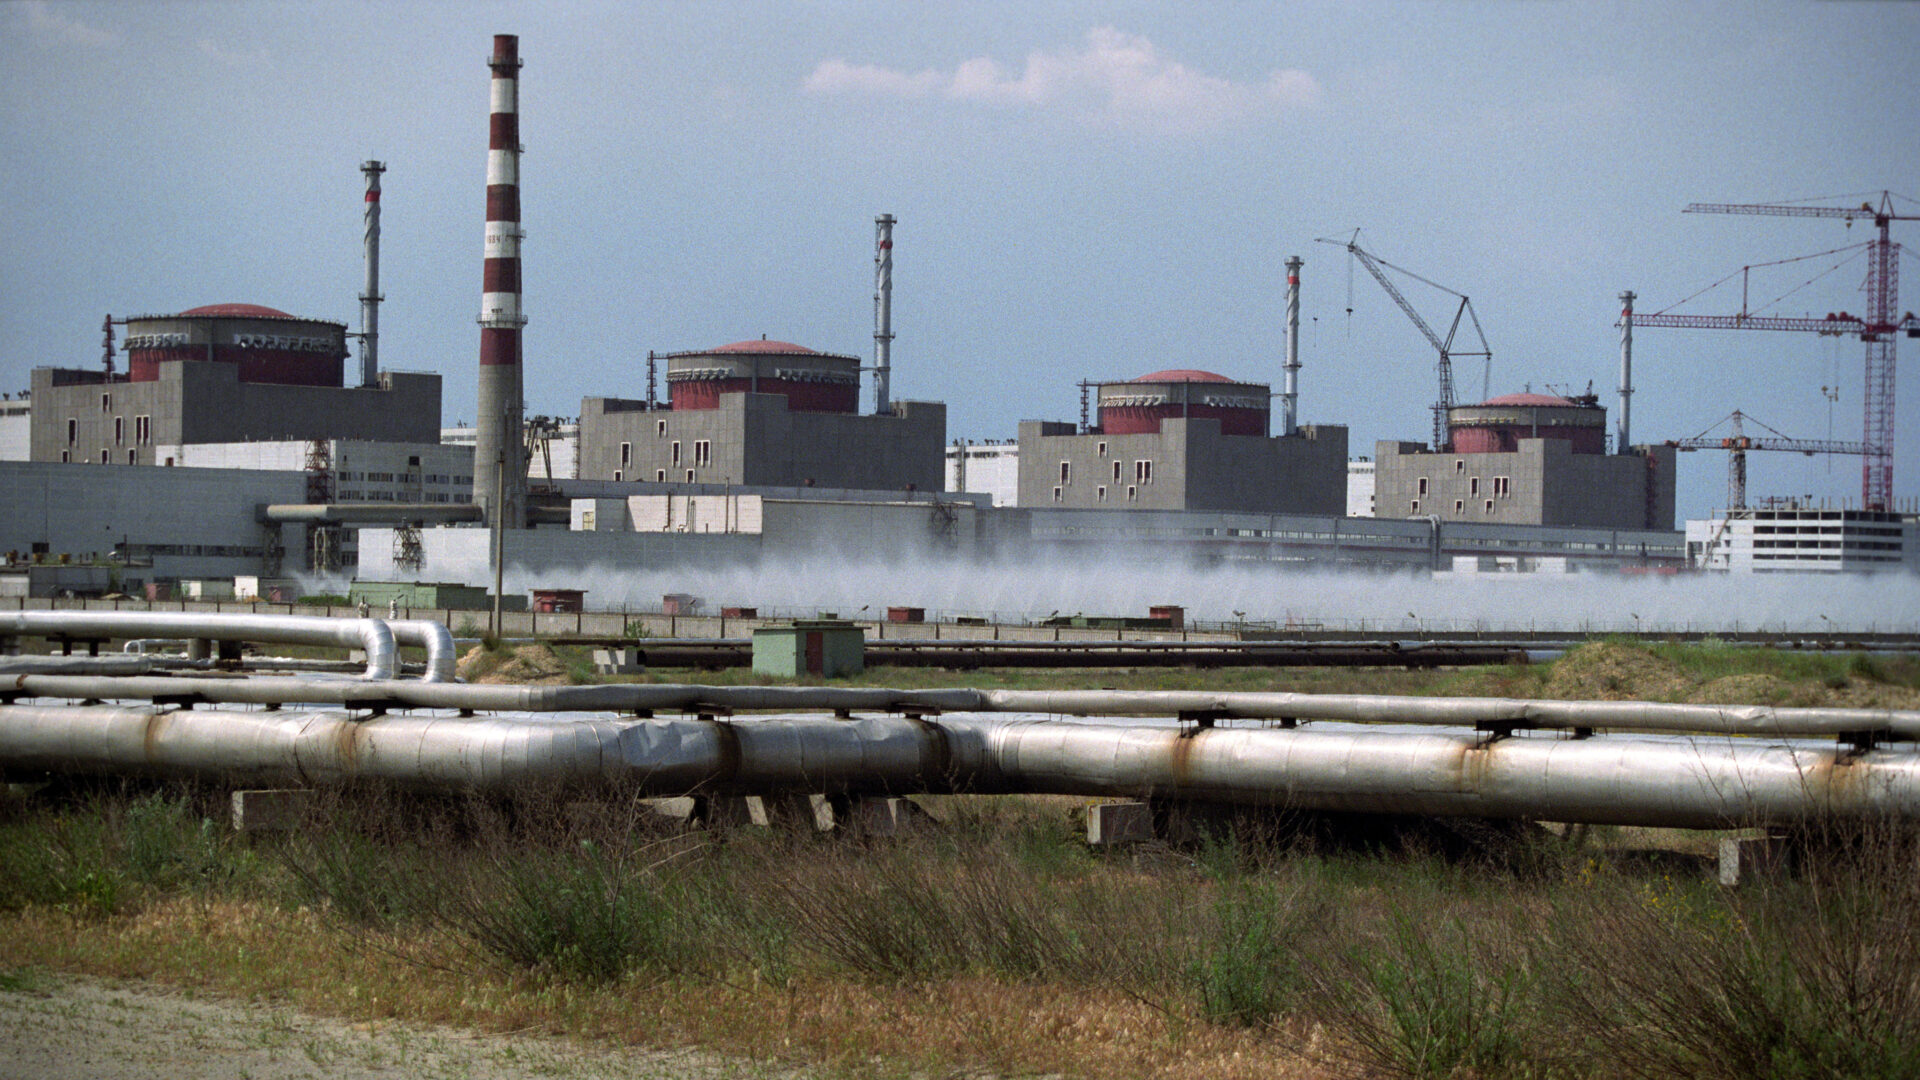 La ONU descarta fuga radioactiva tras toma rusa de la central nuclear de Zaporiyia en Ucrania